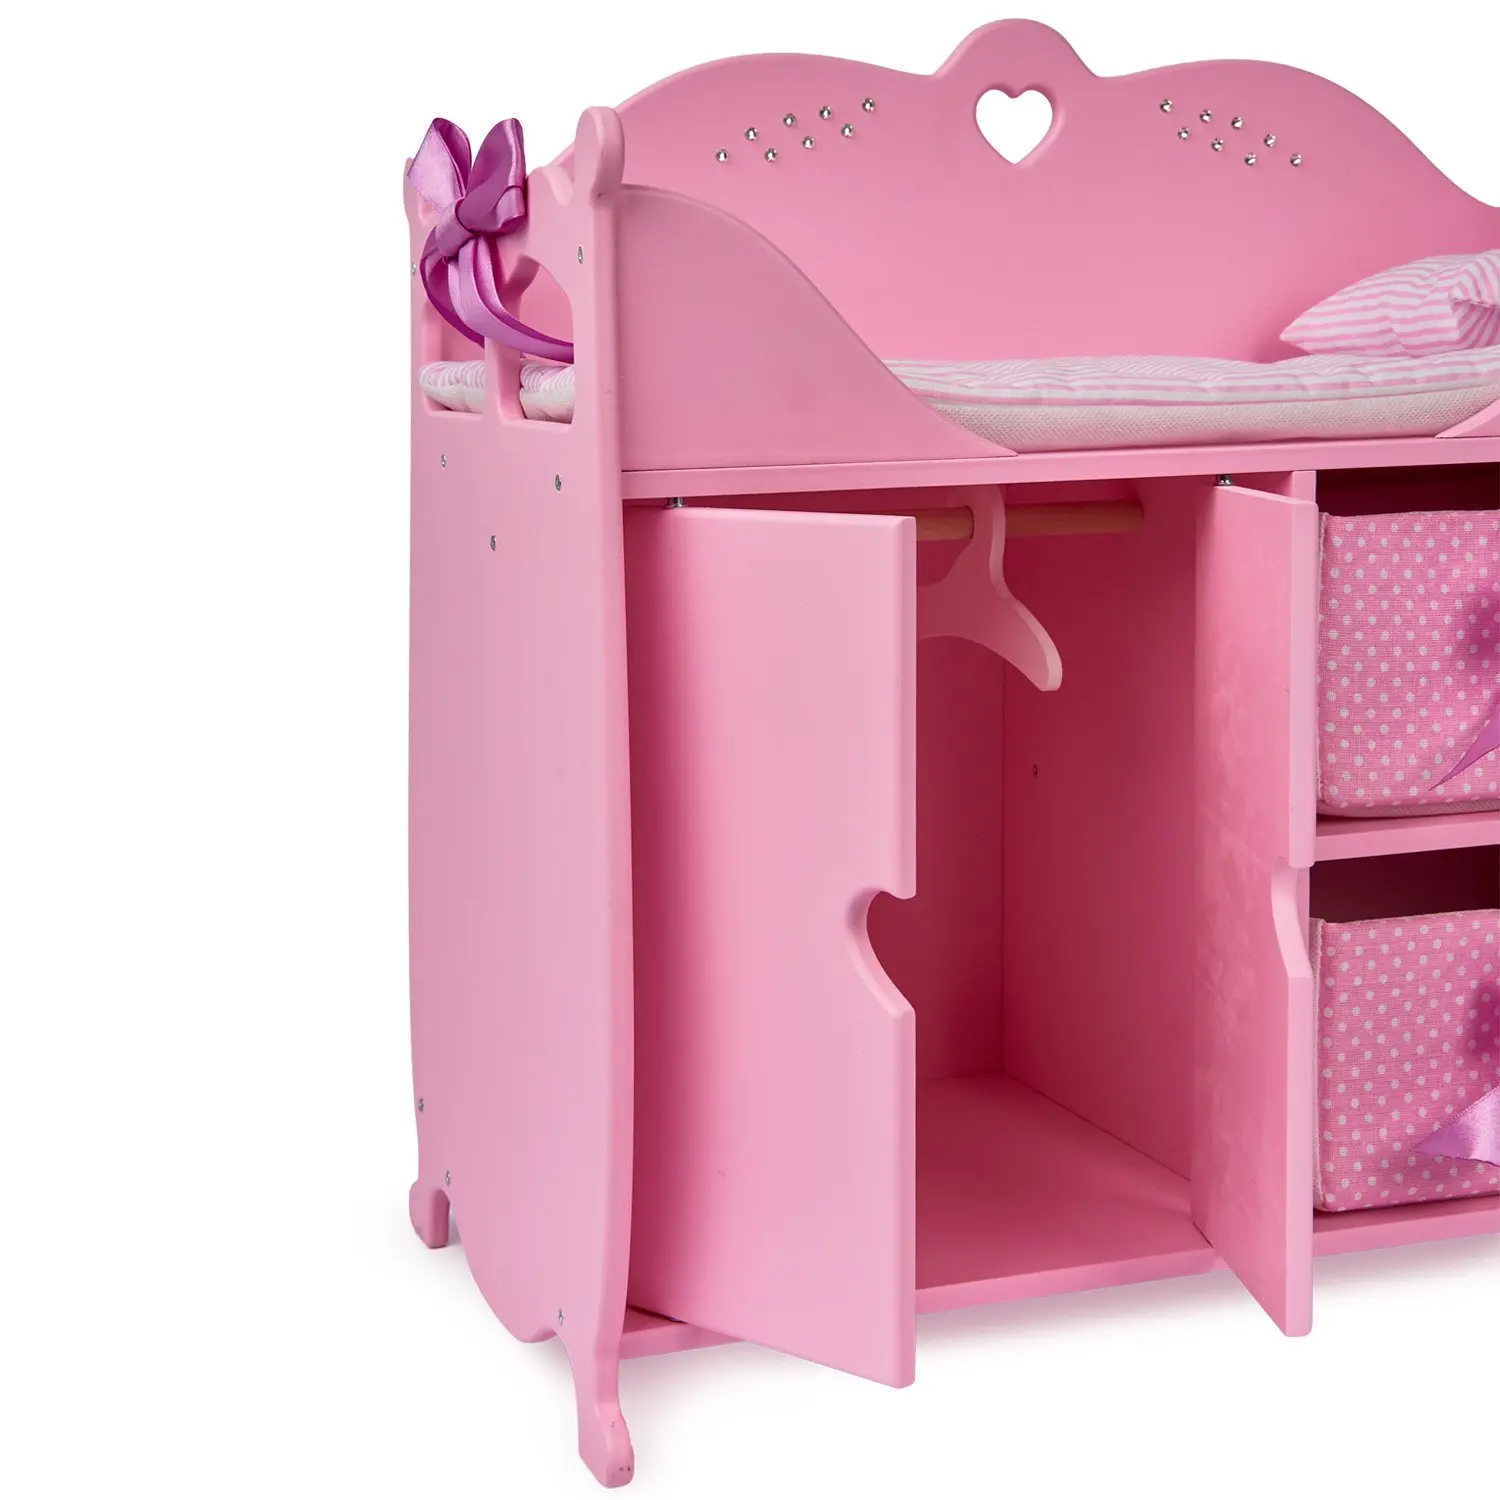 Детская кроватка для кукол. Шкаф кроватка Даймонд принцесс. Многофункциональный игровой комплекс, коллекция «Diamond Princess» розовый.